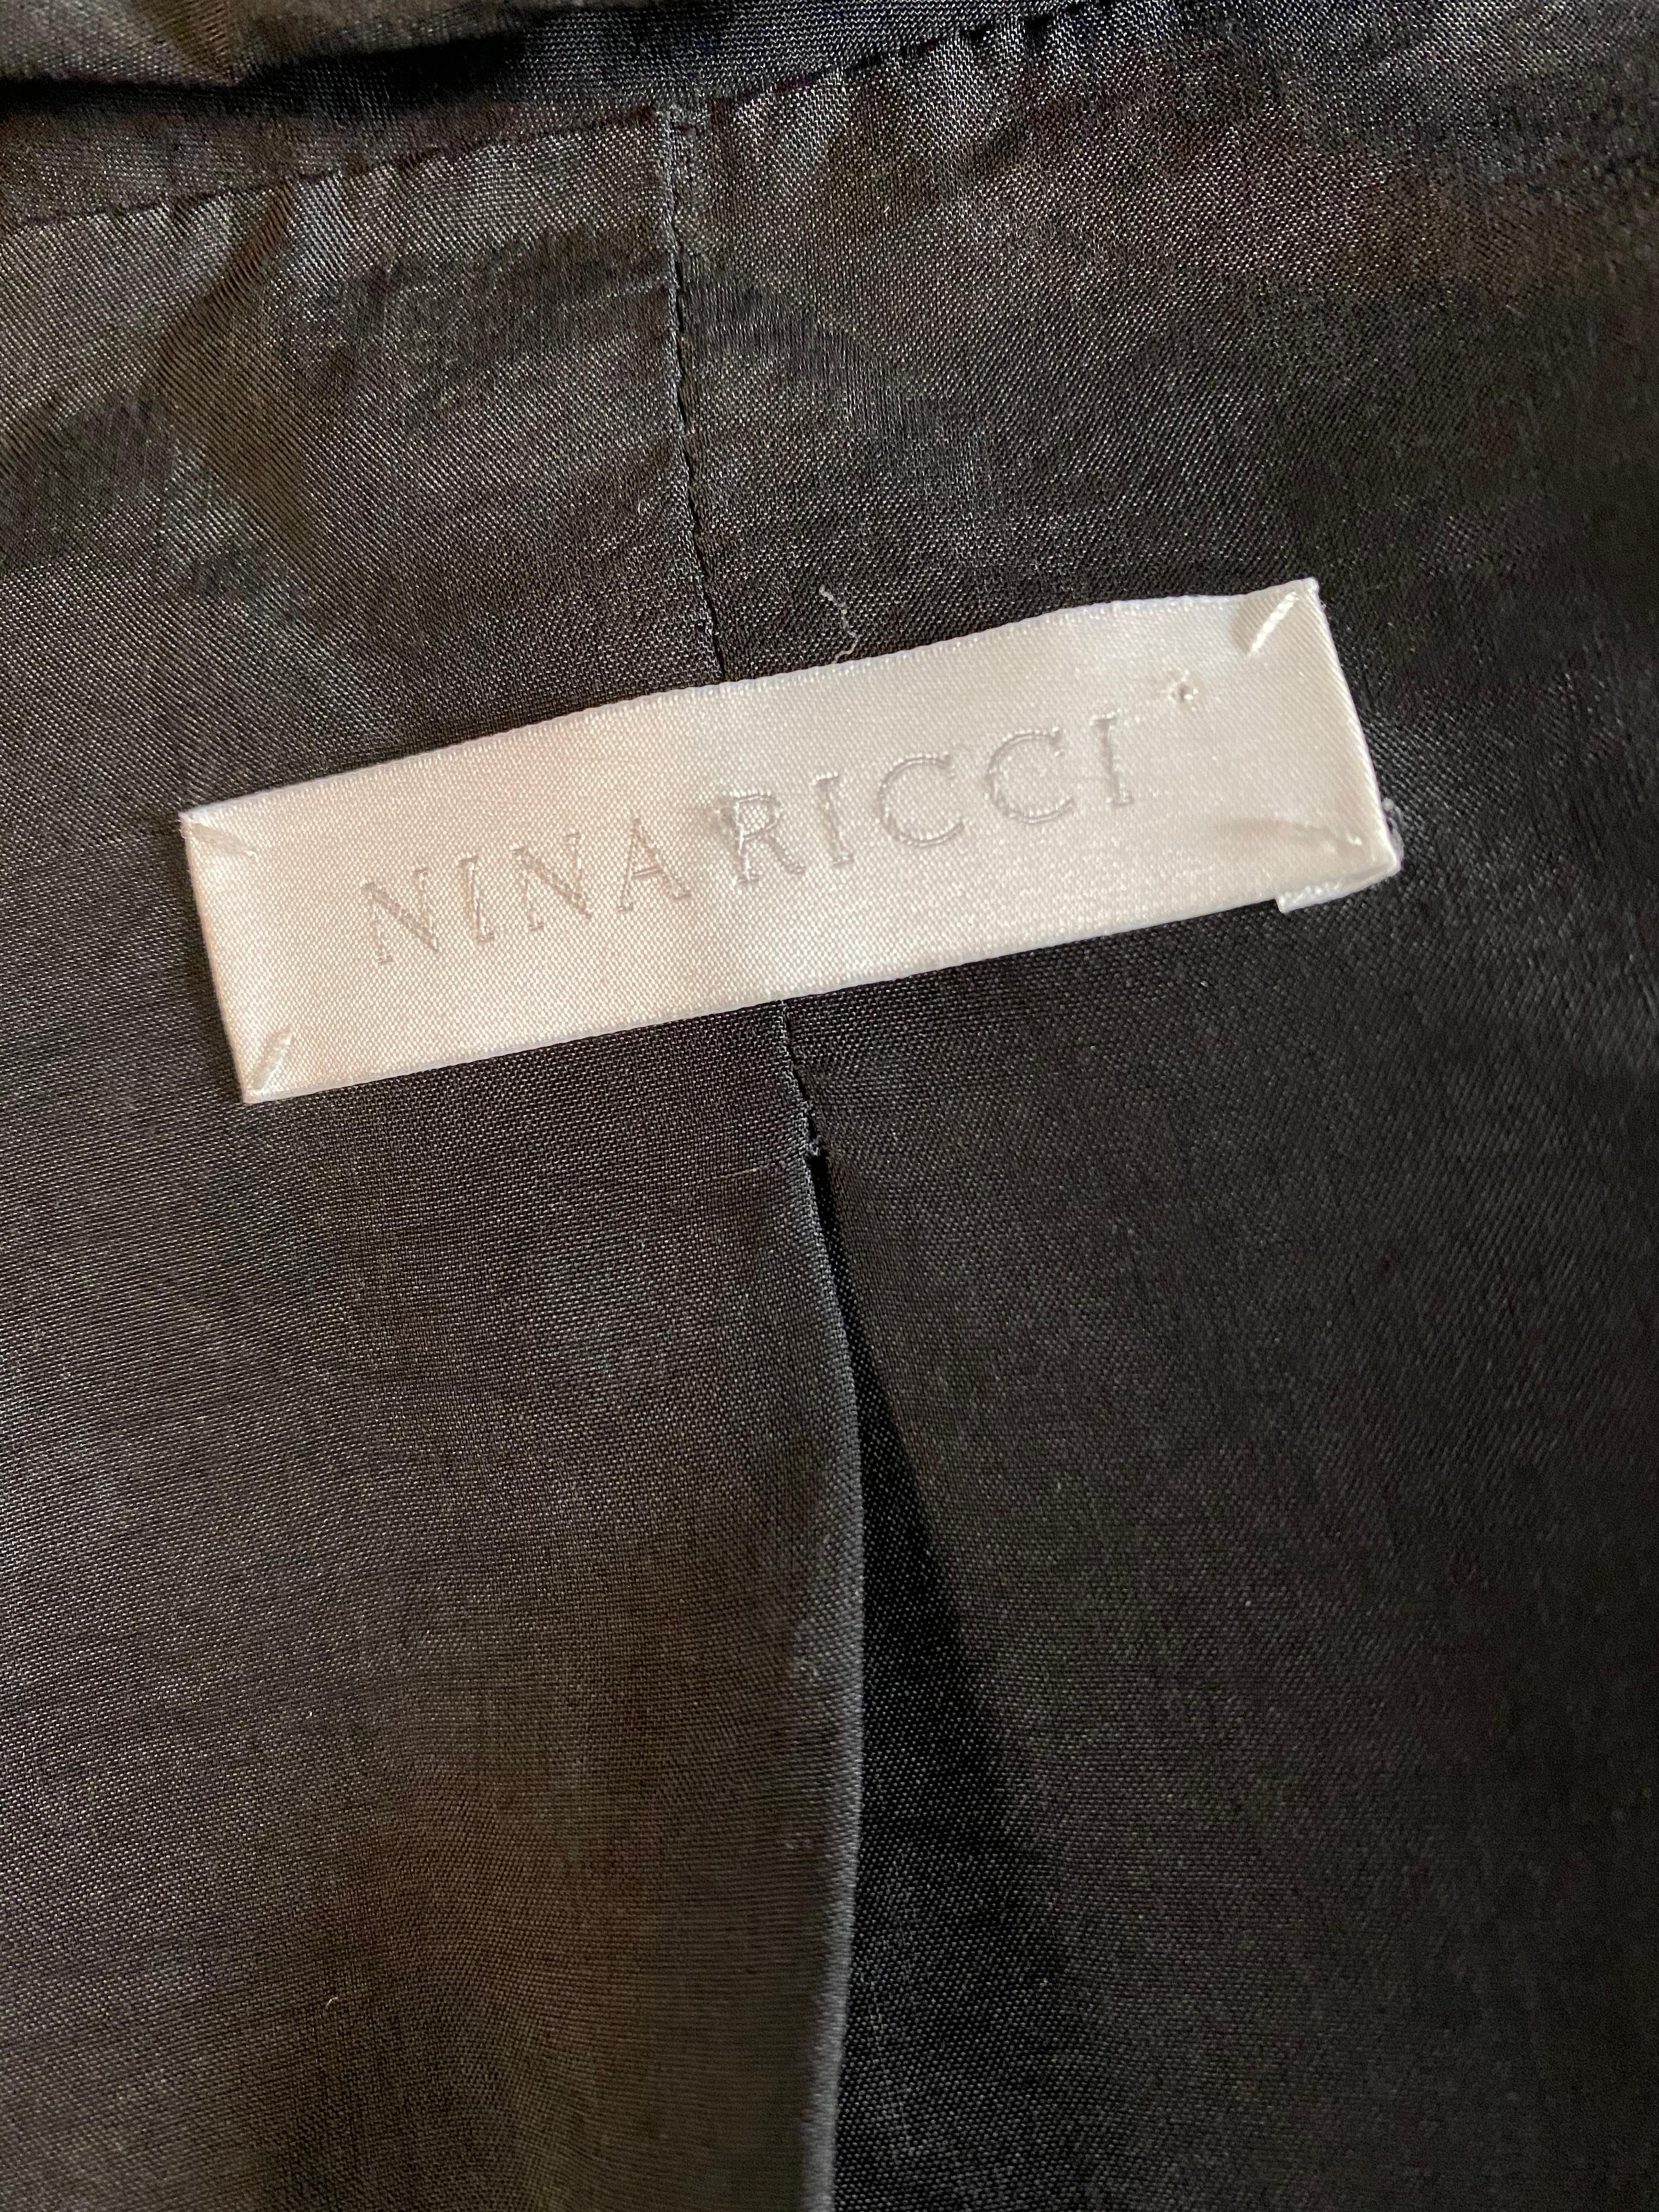 Nina Ricci Black Leather Jacket, Size 36 6